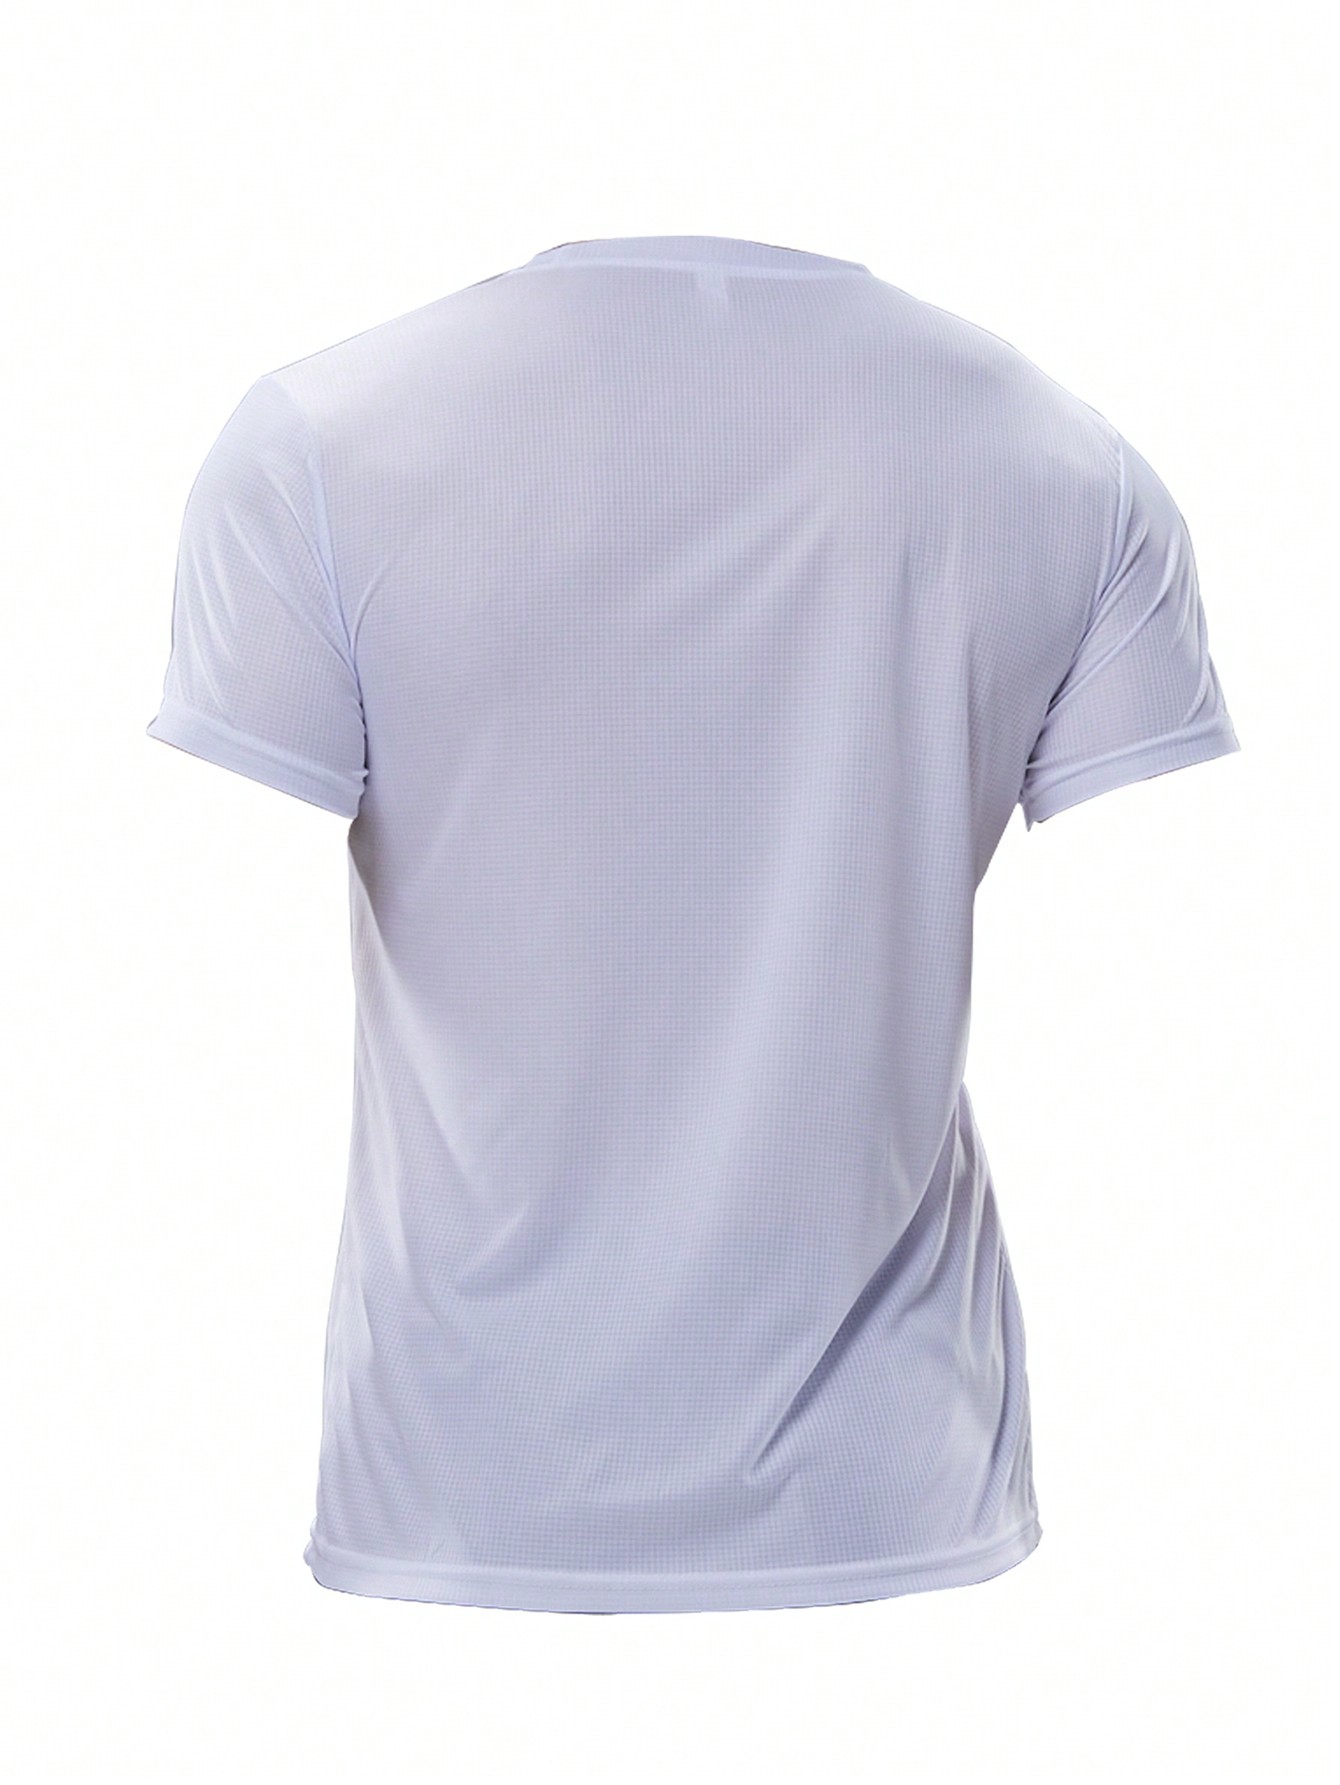 2 шт. комплект свободных футболок с короткими рукавами для тренировок и бега для мужчин, белый